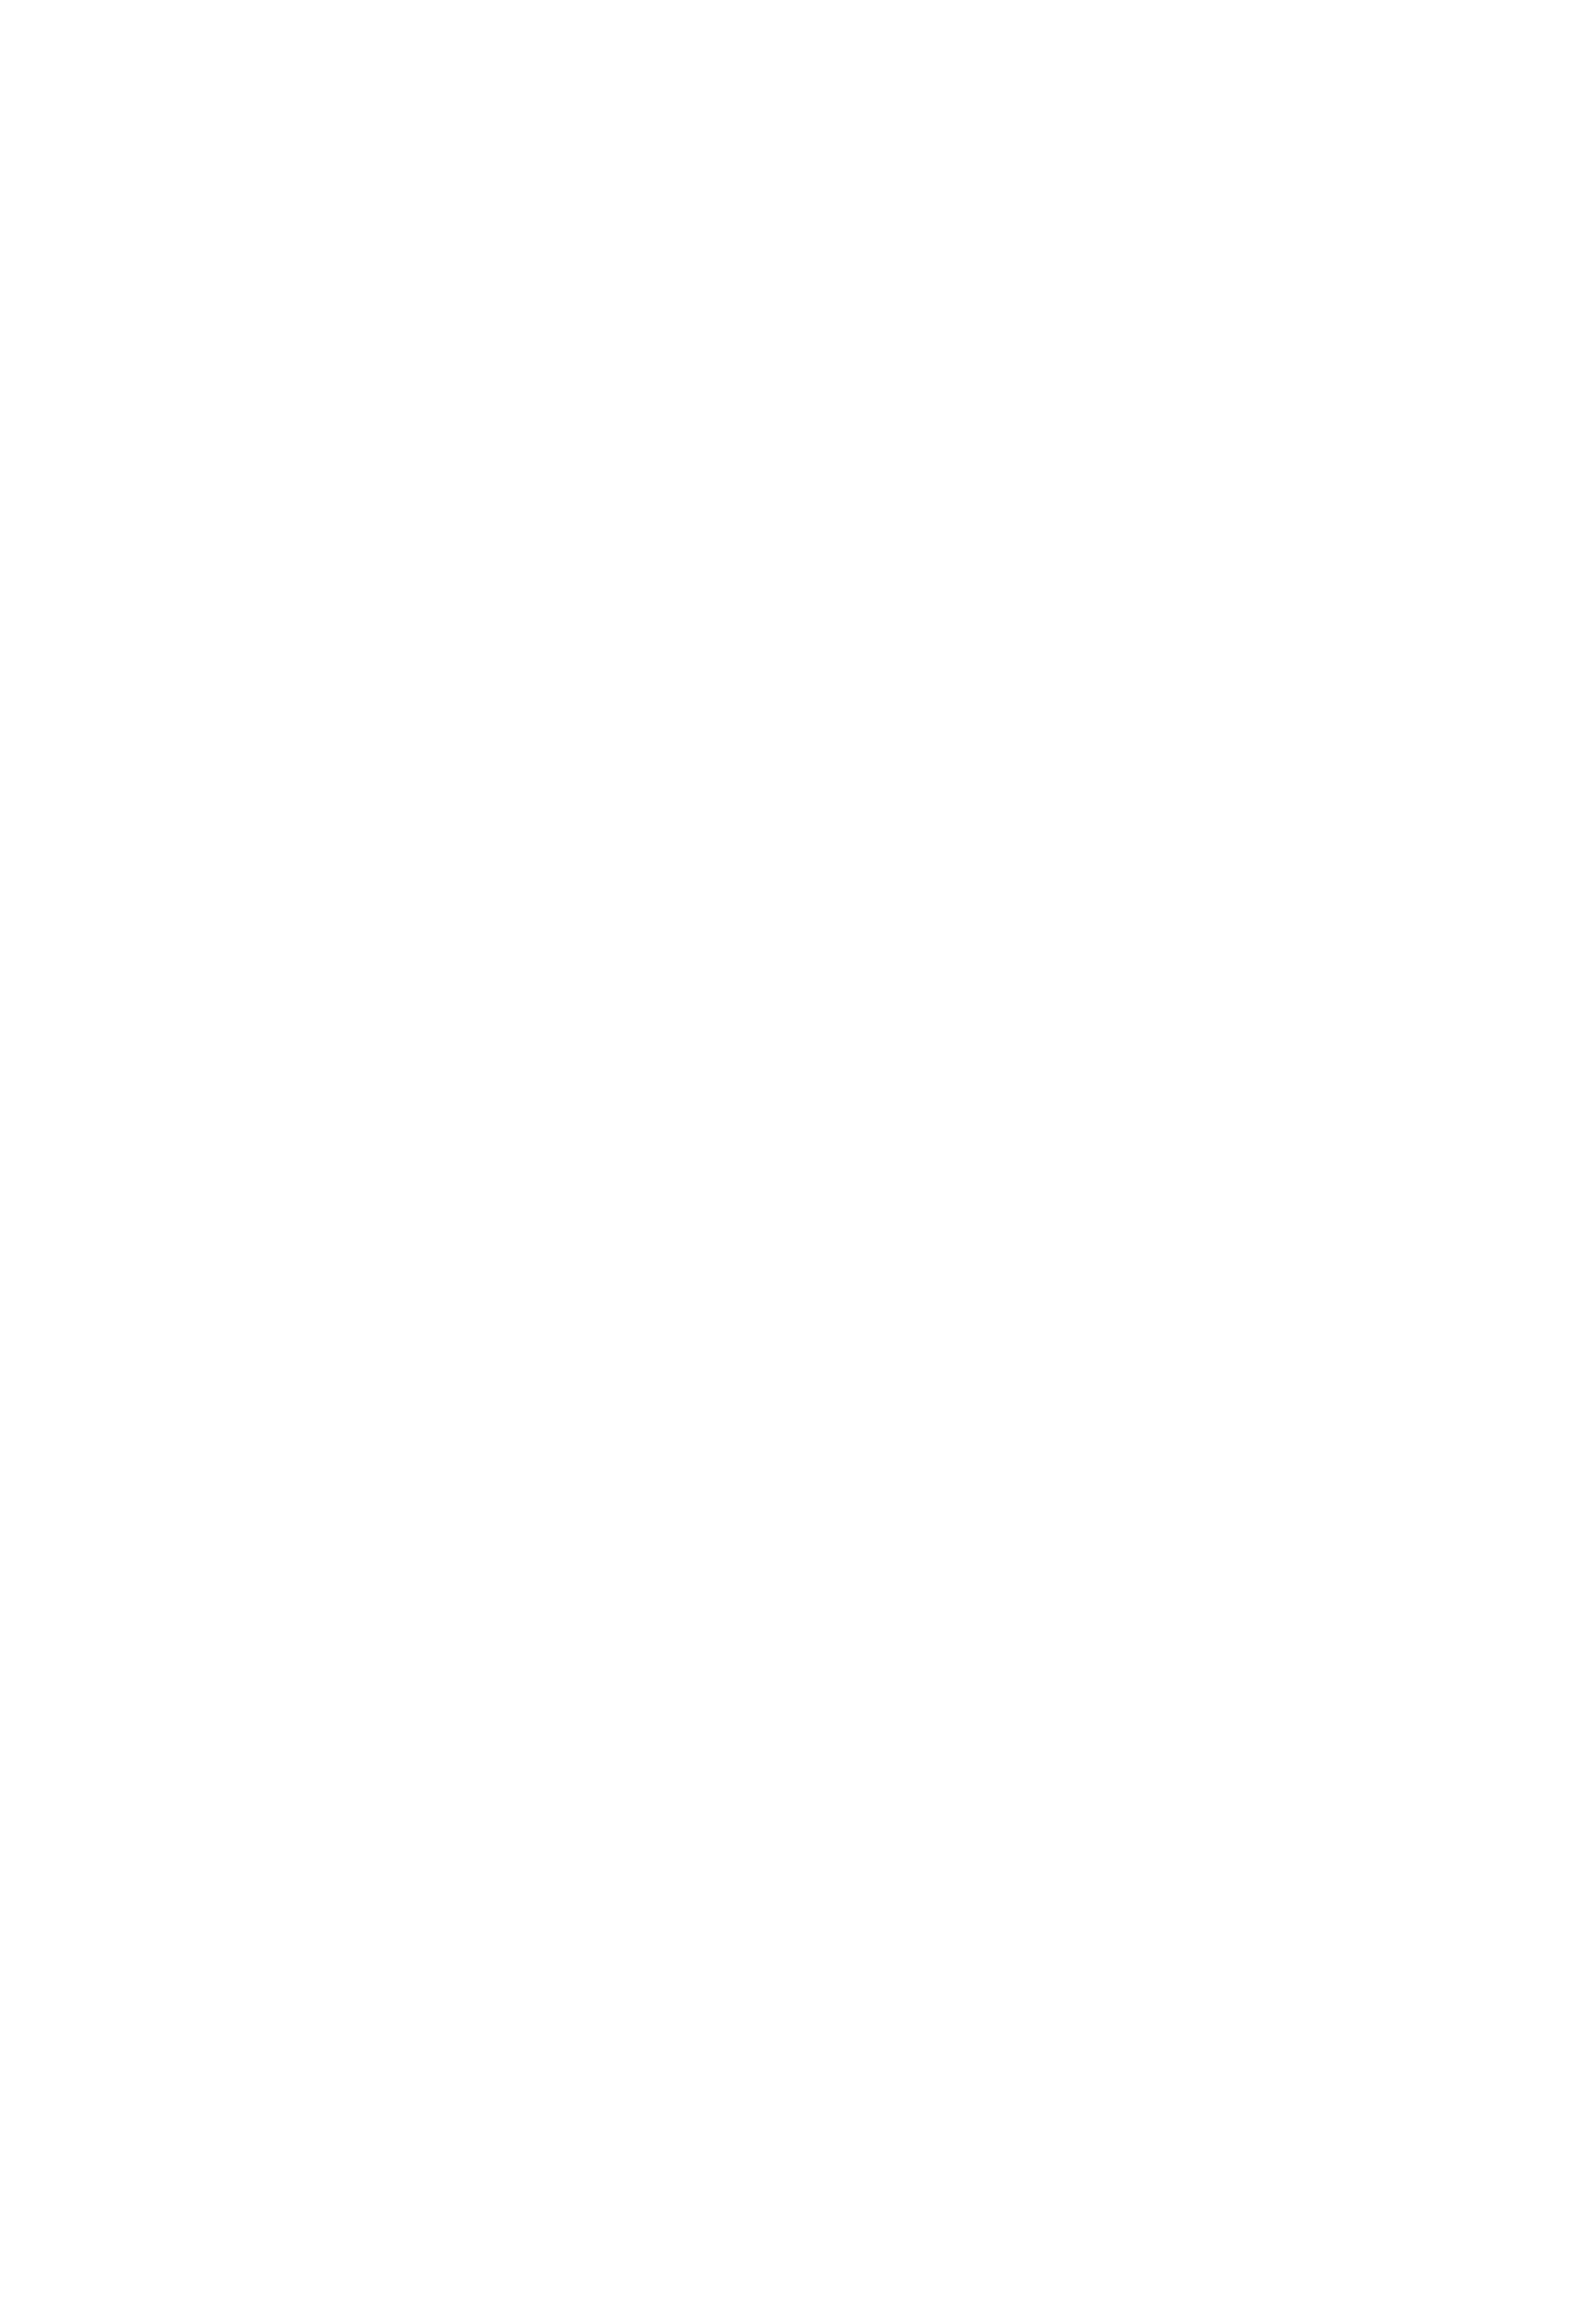 Вязаное платье из кидмохера на шёлке по картине Моне "Впечатление" бренда "Таня Исаева"